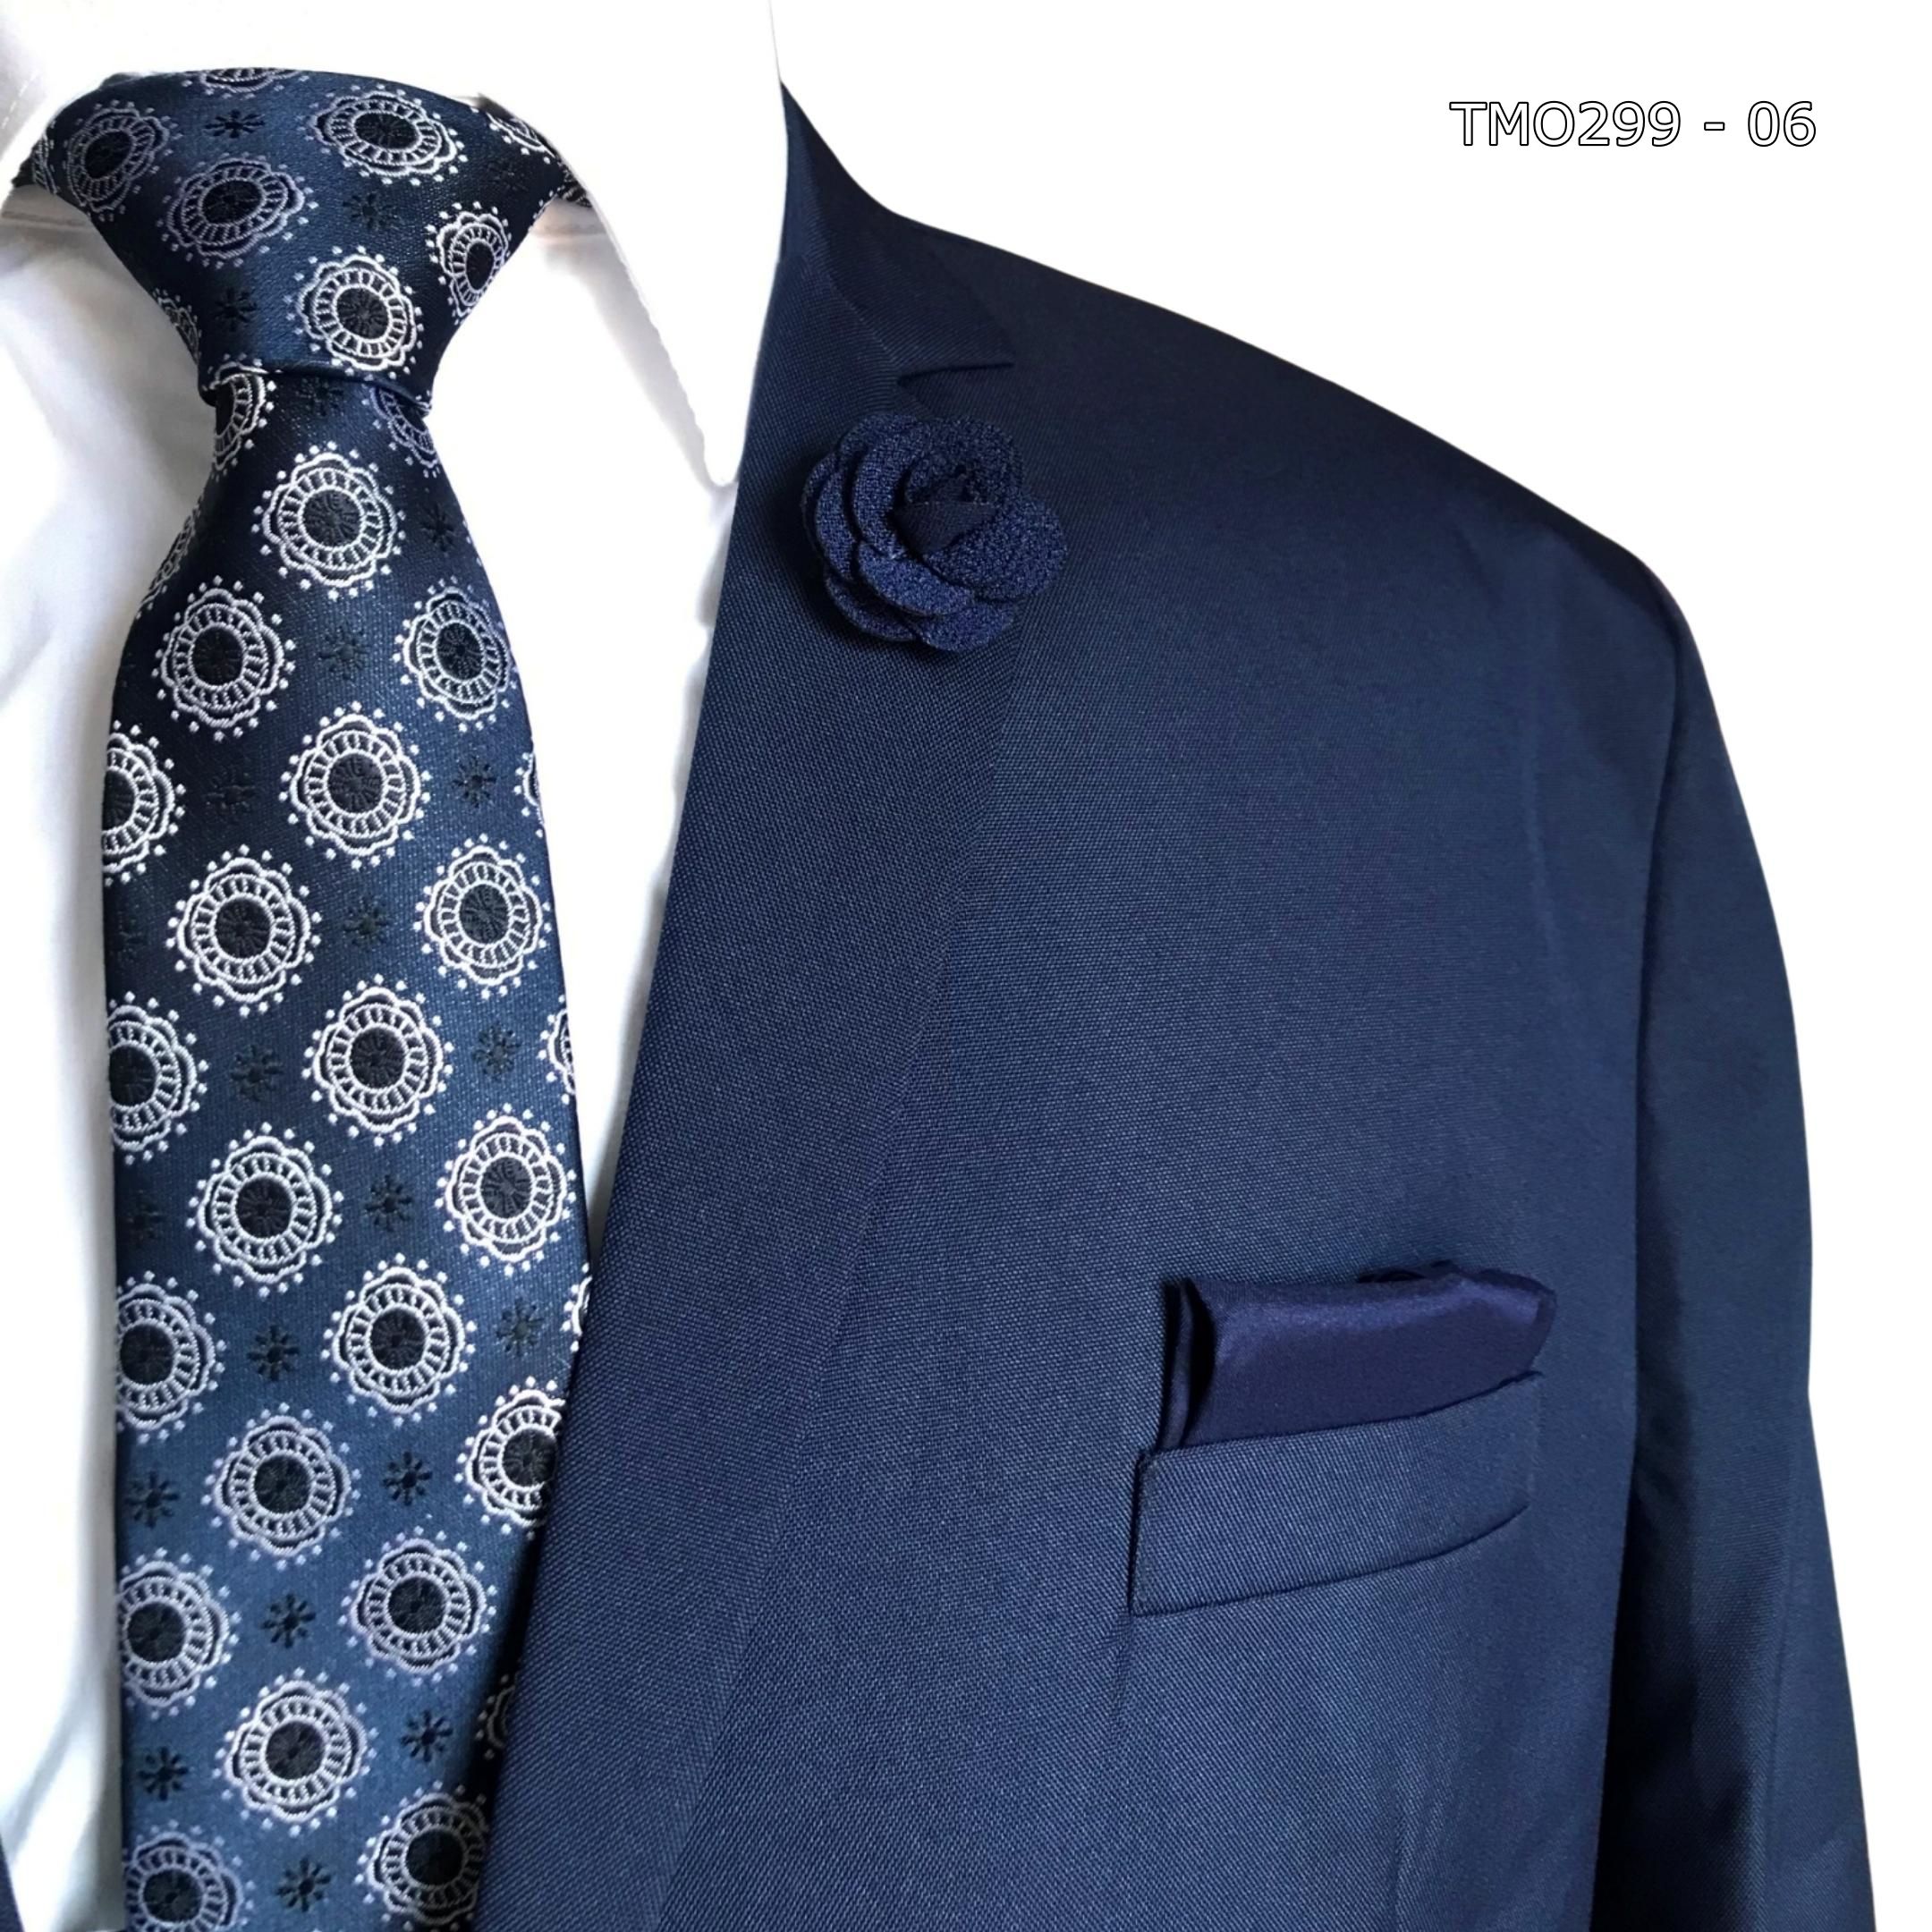 Terno Plus Size Masculino nº 64 Azul Marinho de Oxford - Tie's & Company -  melhor da moda masculina.